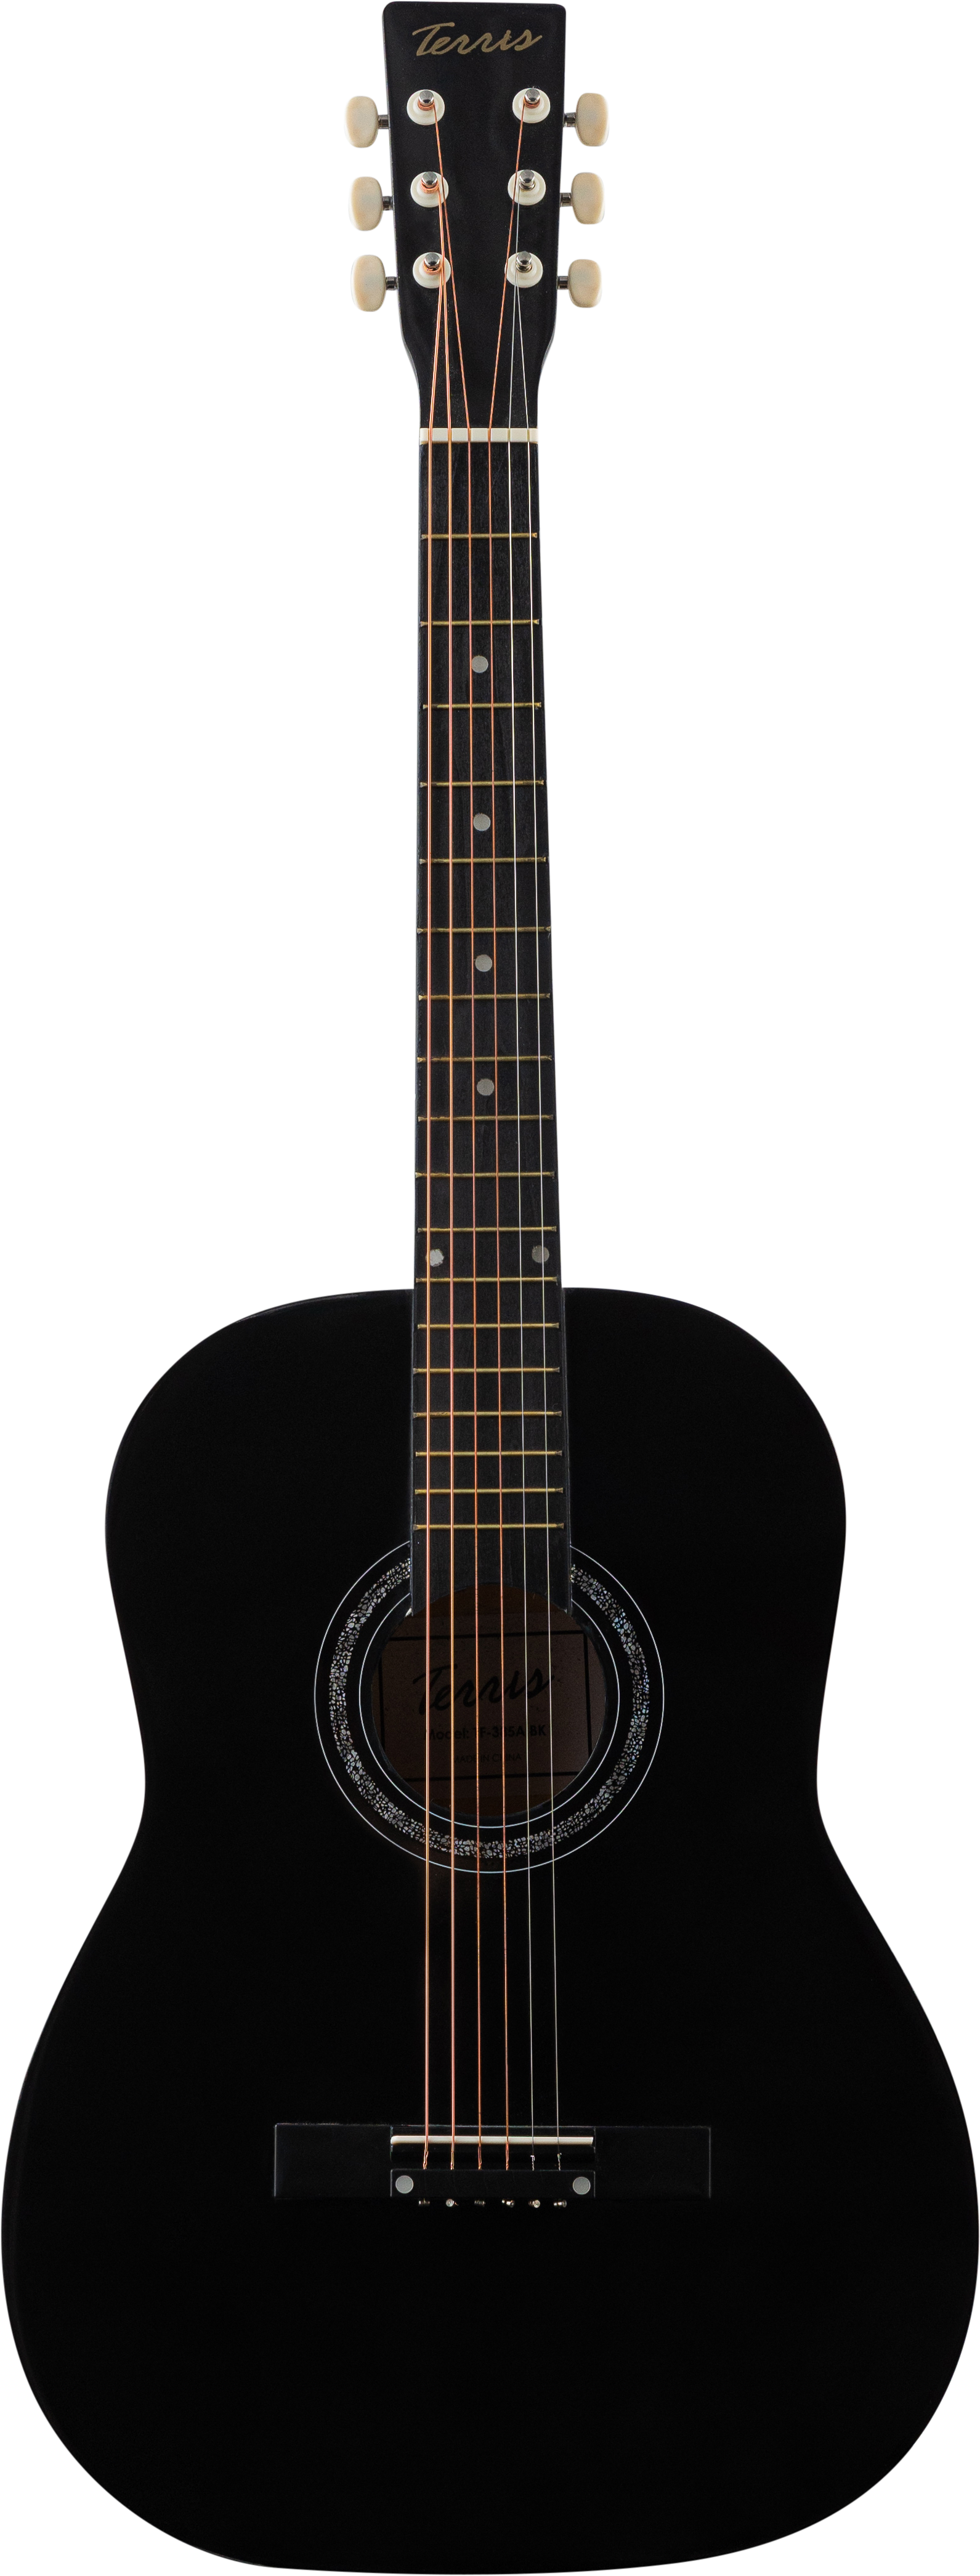 Гитара акустическая Terris TF-385A BK шестиструнная цвет черный - фото 1